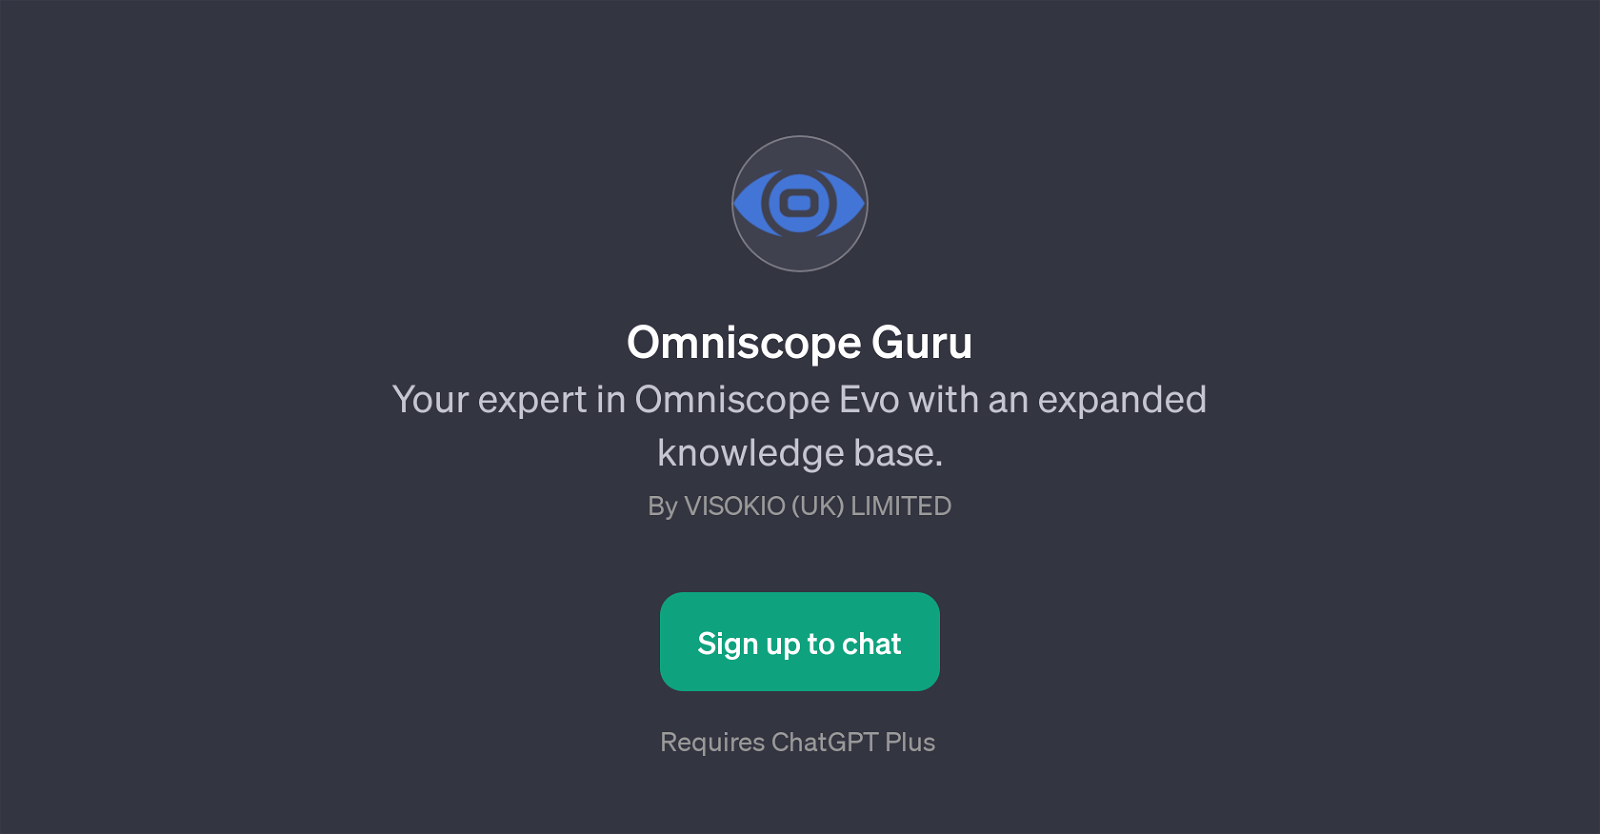 Omniscope Guru website